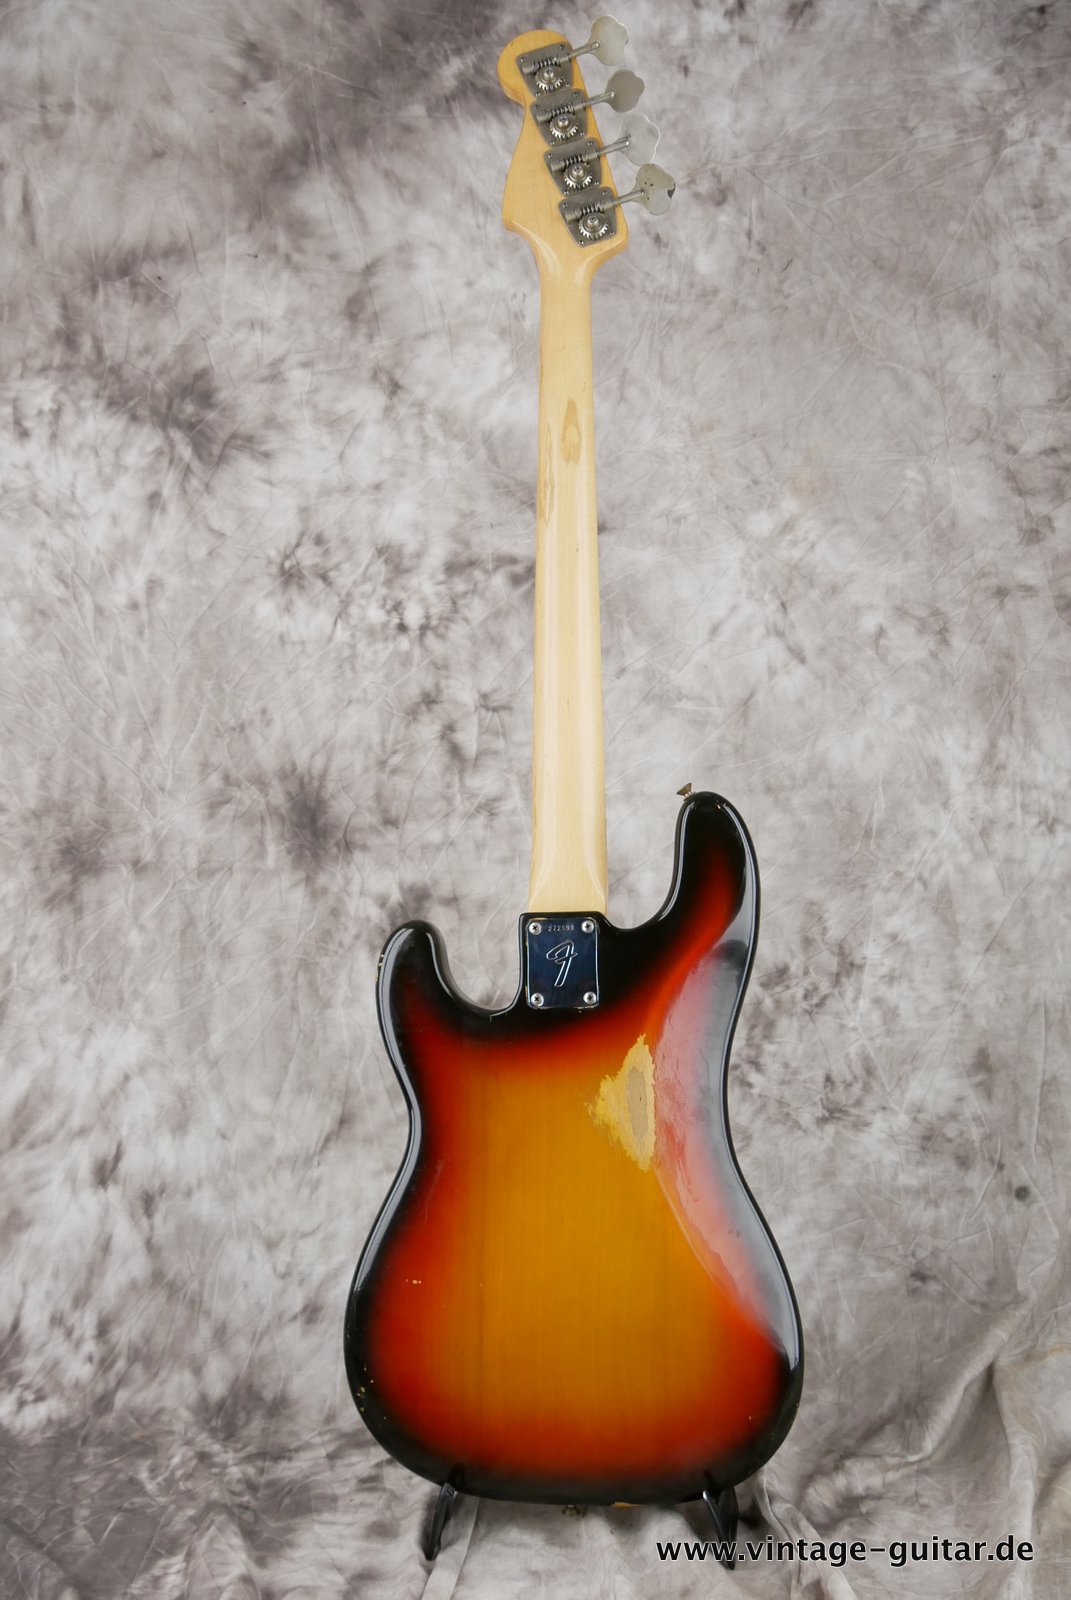 Fender-Precision-Bass-sunburst-1969-003.JPG